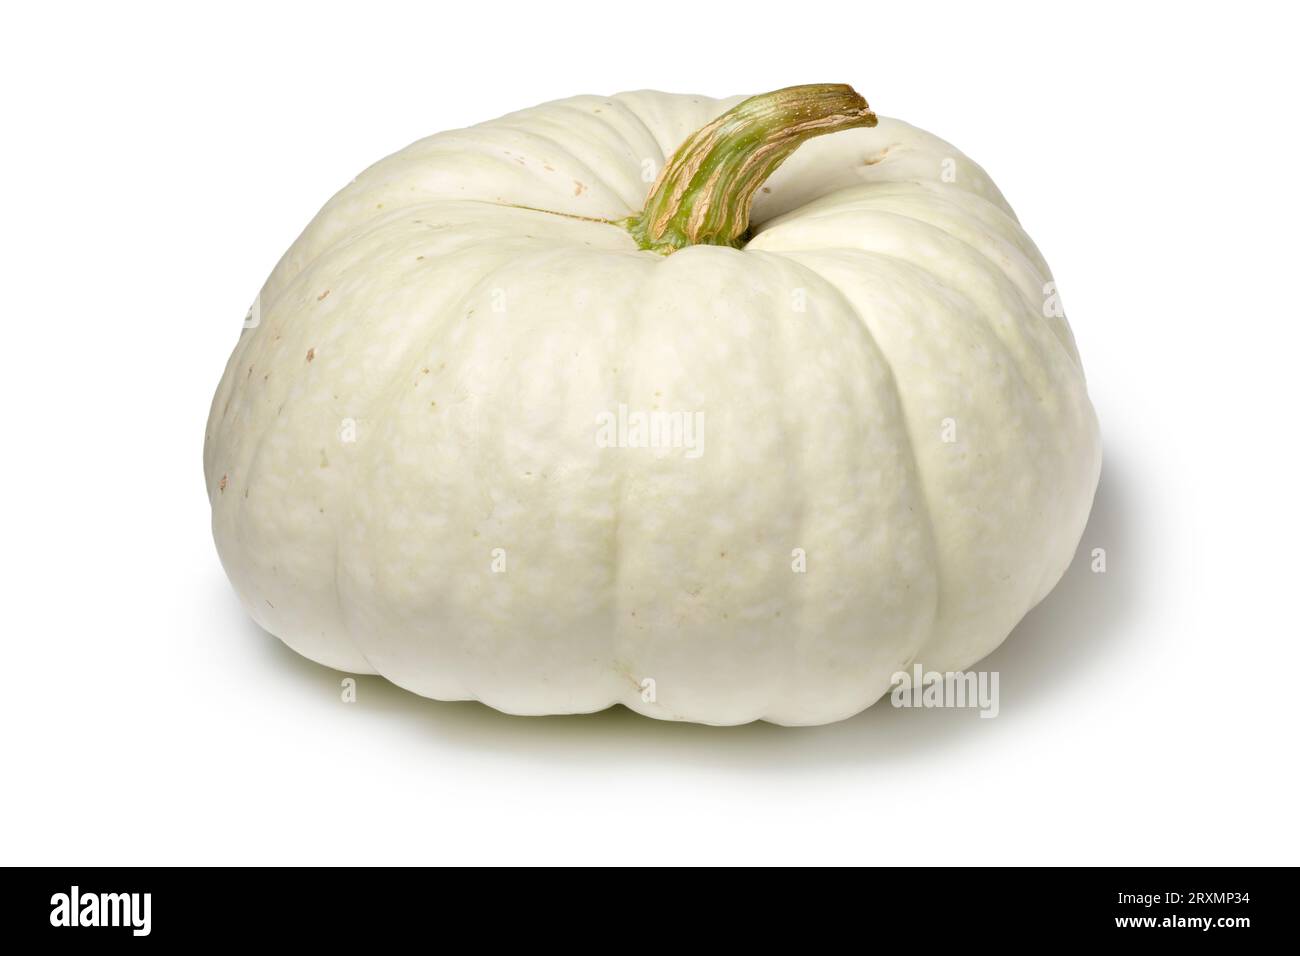 Single whole fresh Flat White Boer Pumpkin isolated on white background close up Stock Photo